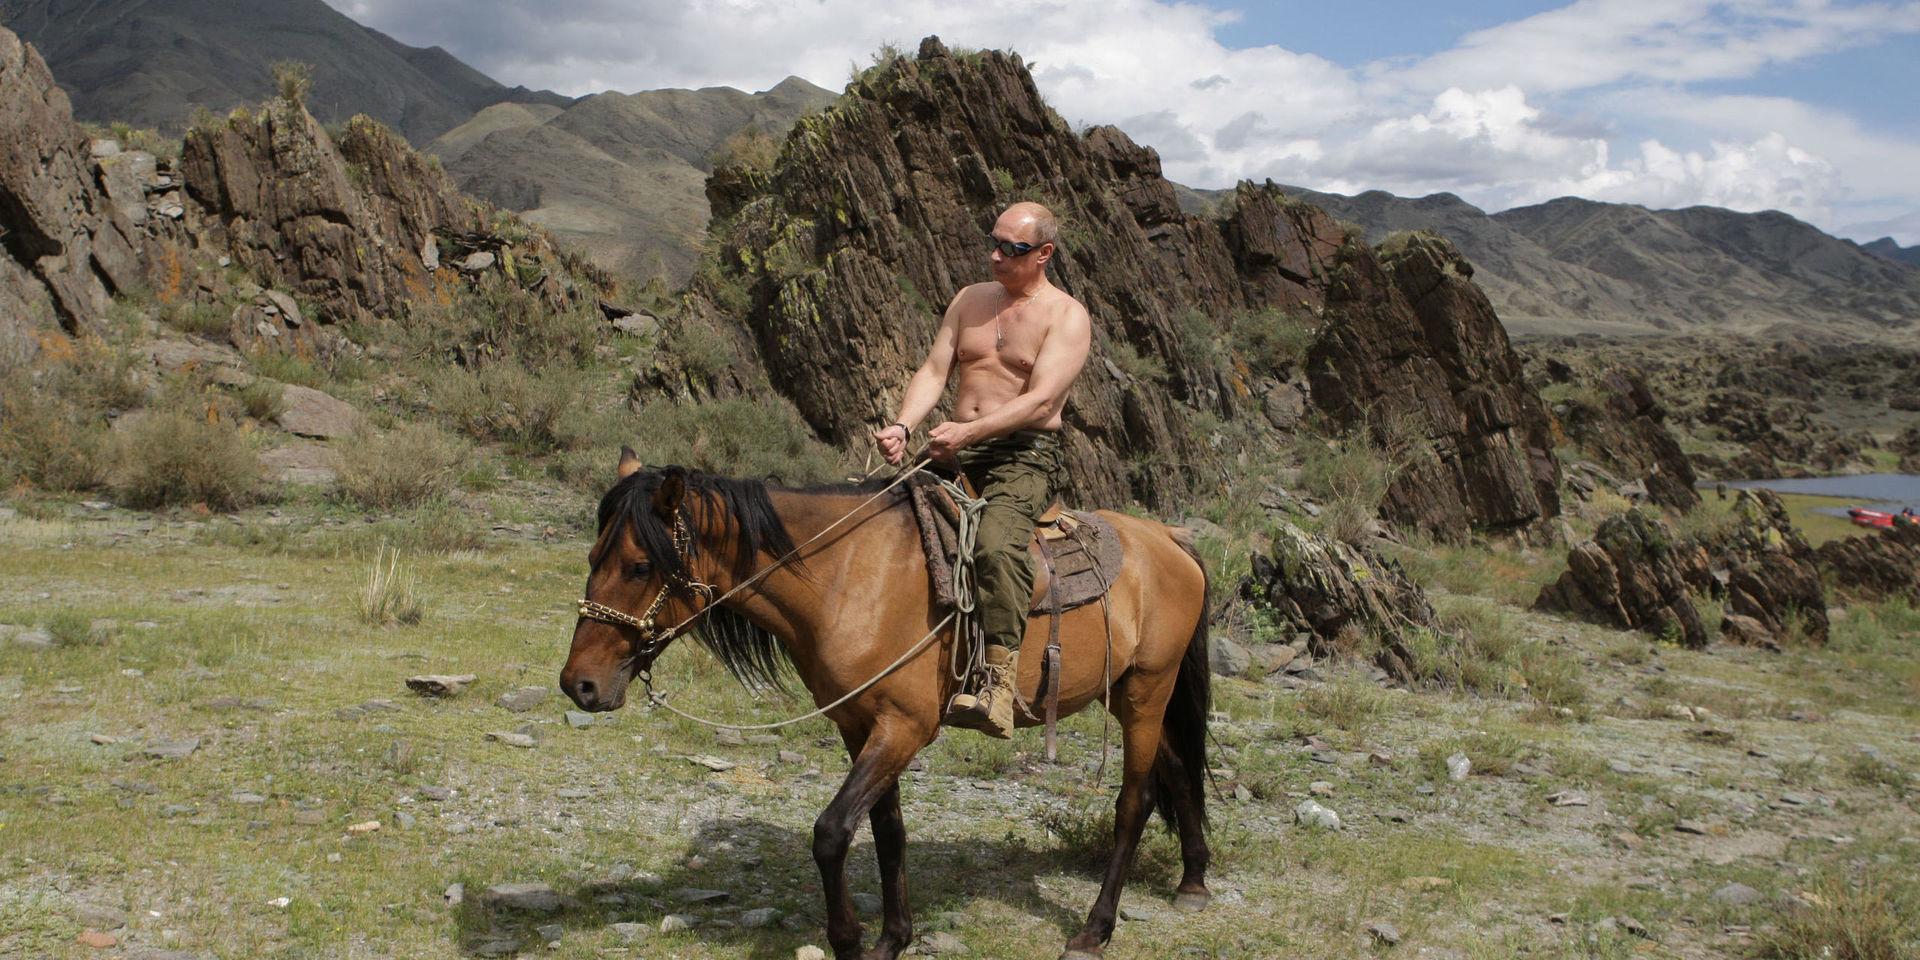 Kanske en av de mest spridda bilderna på Rysslands premiärminister Vladimir Putin från 2009. –Associationerna som uppstår när Putin kommer ridande till häst är ju att &quot;Här är riddaren som ska rädda landet&quot;, säger Nicklas Håkansson. 